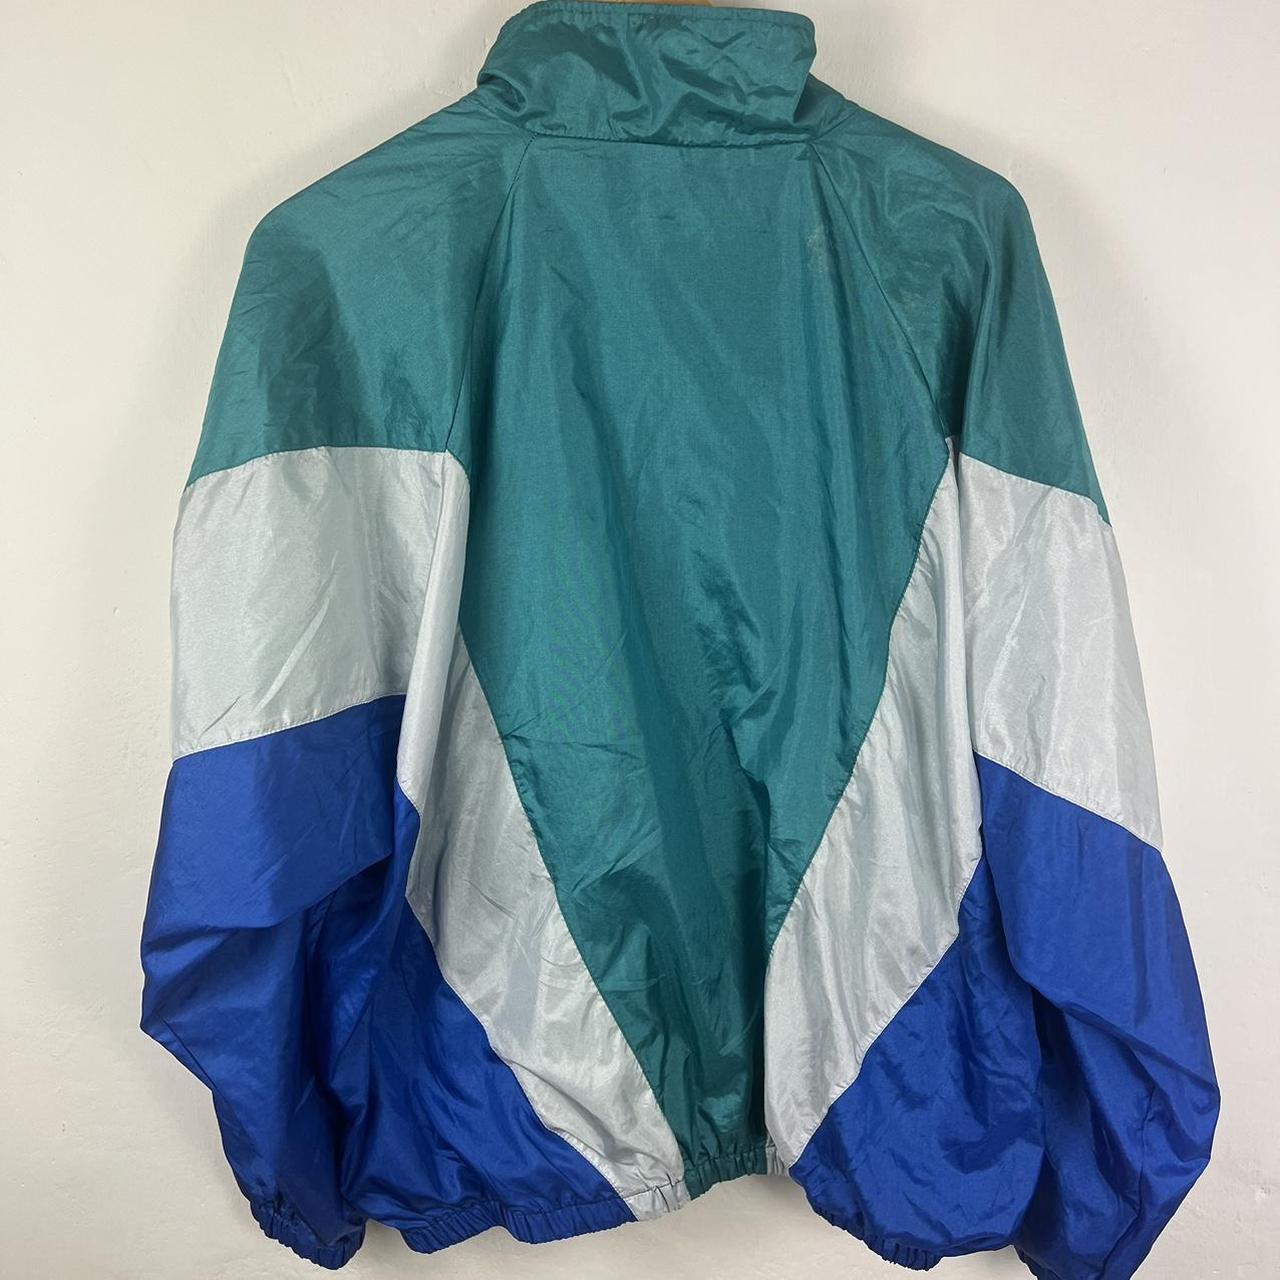 Adidas track jacket large